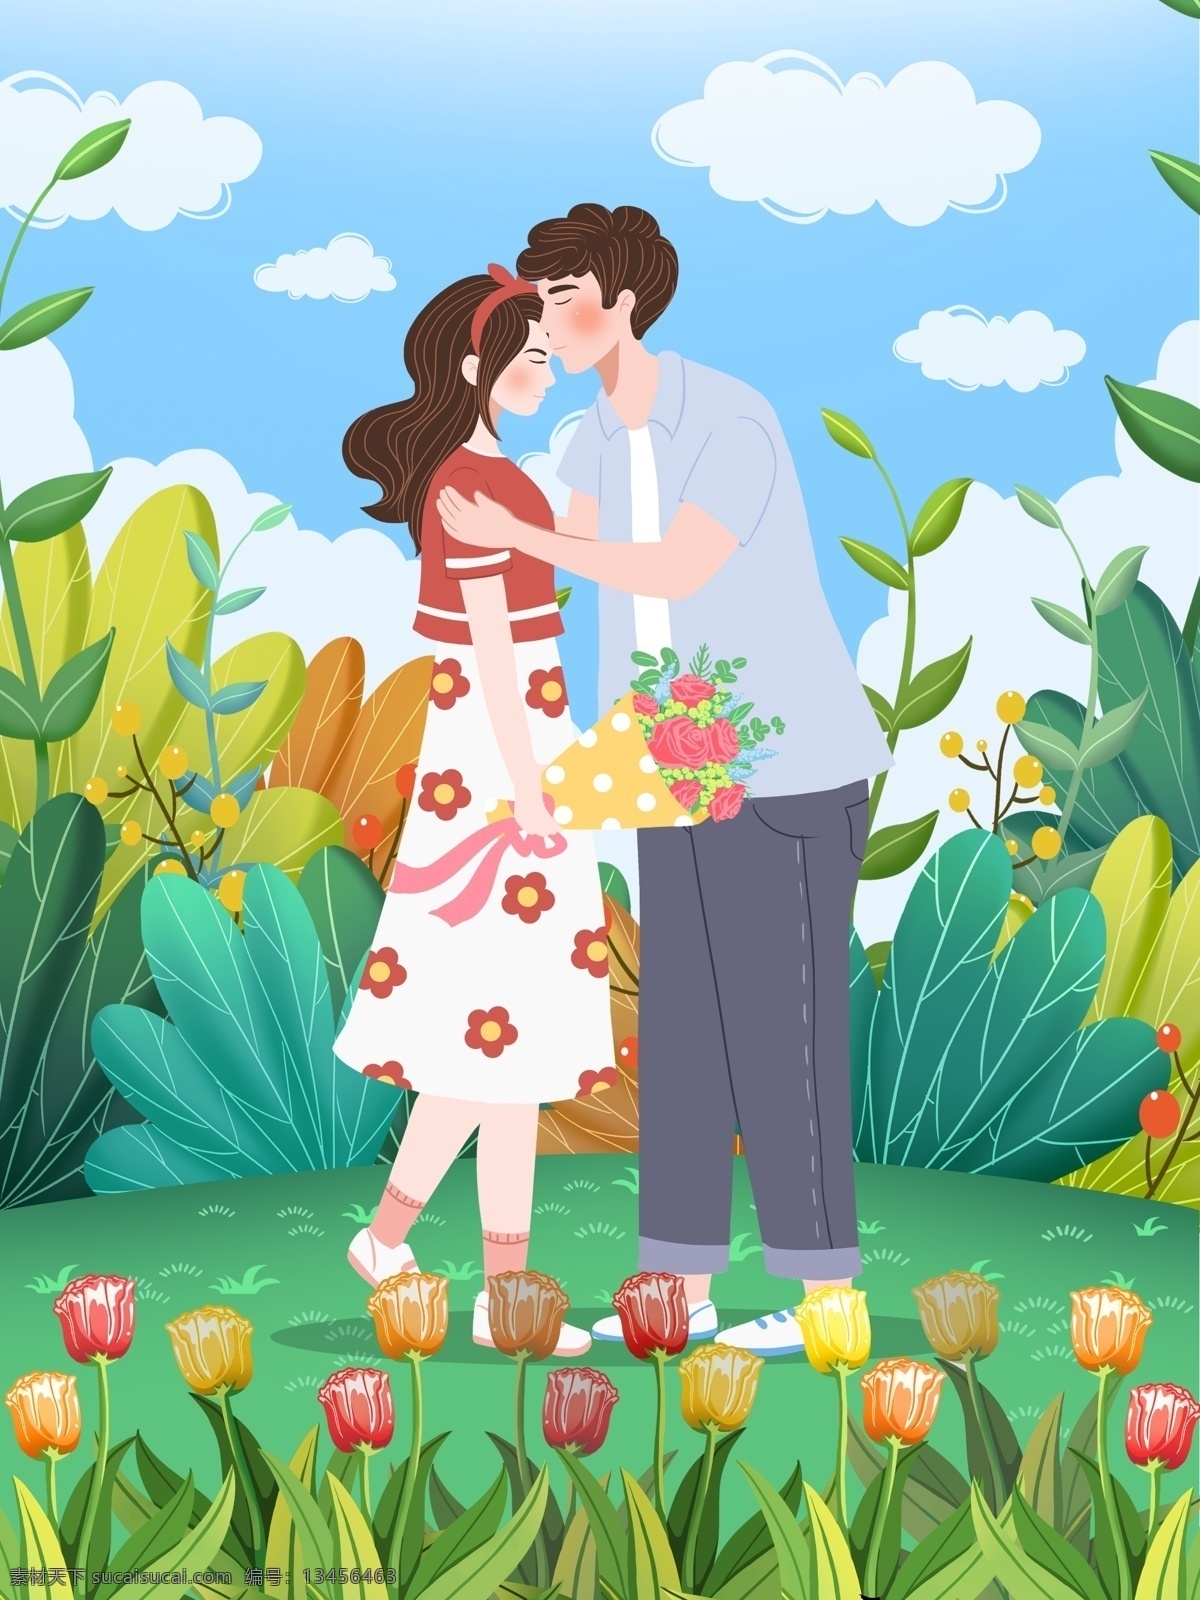 520 表白 日 郁金香 花园 男友 送花 亲吻 女友 五月 云 男人 女人 叶子 植物 玫瑰 插画 壁纸 包装 配图